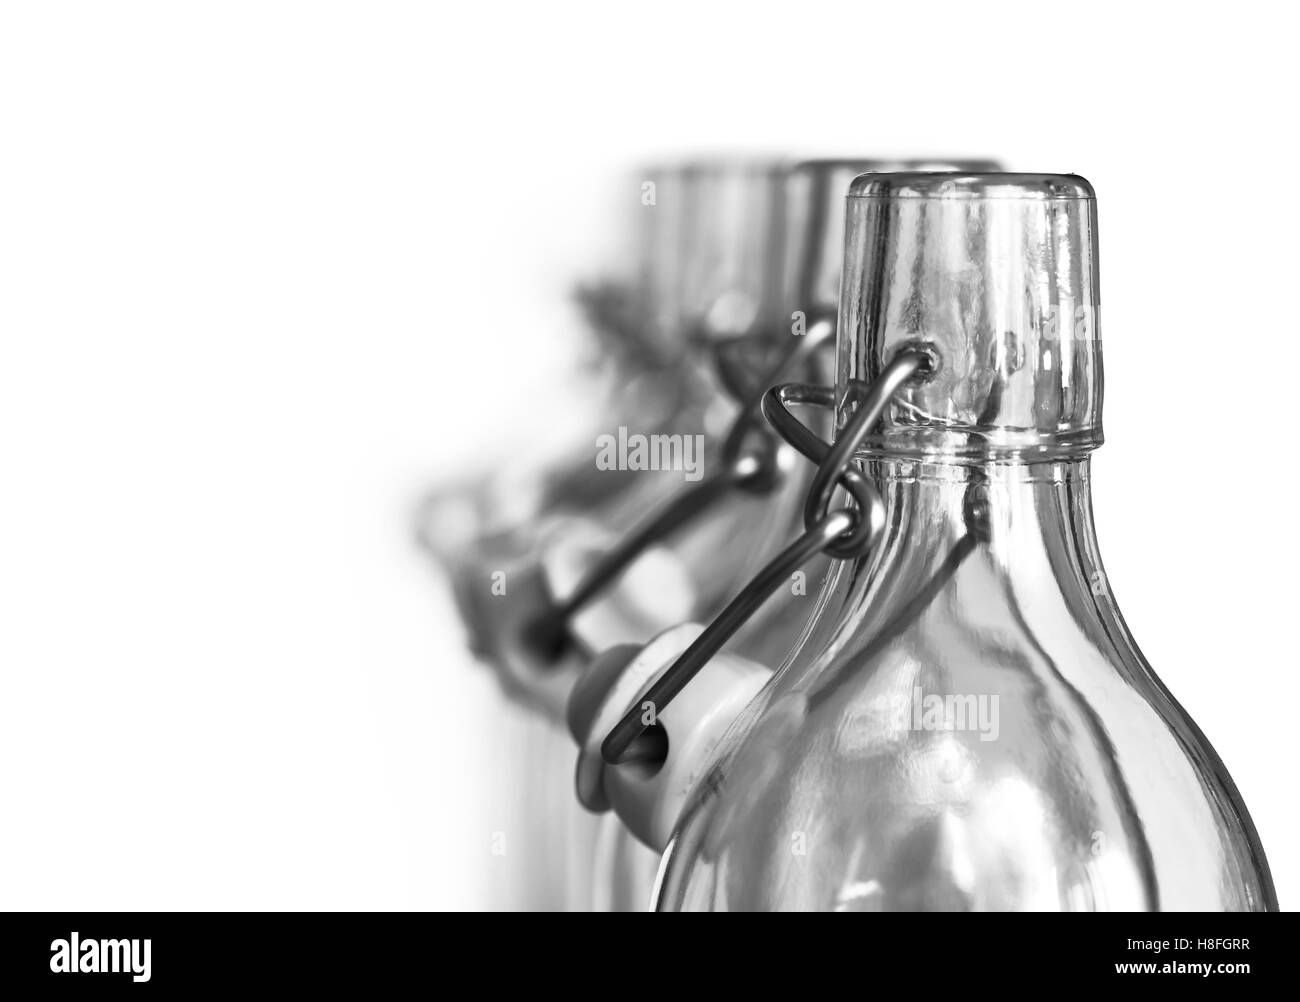 Dettaglio del collo delle bottiglie di vetro con un tappo in porcellana Foto Stock